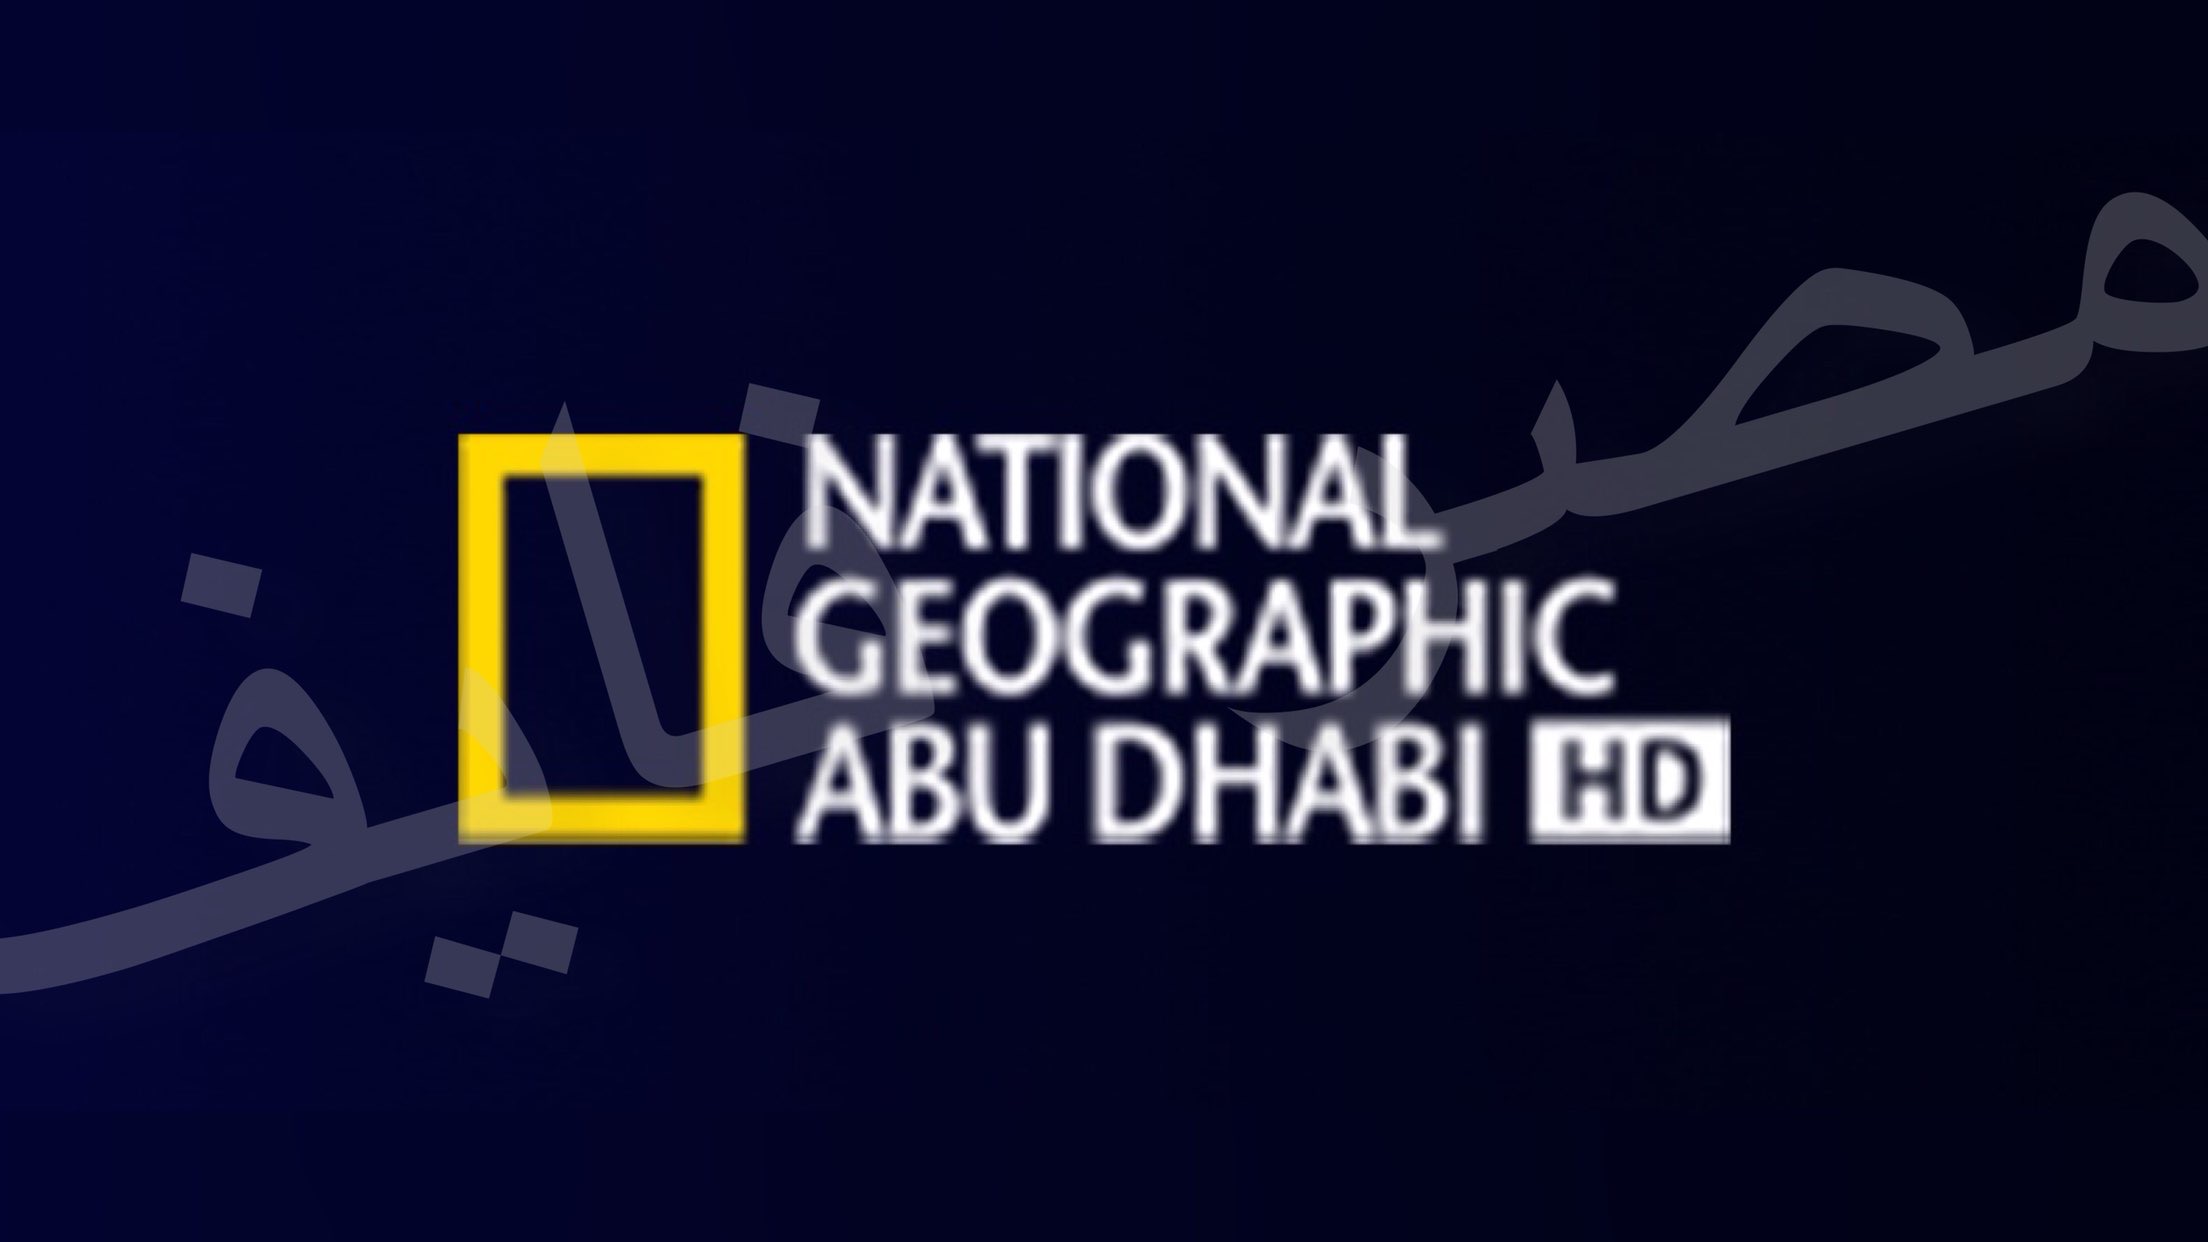 استقبل الآن تردد قناة ناشيونال جيوغرافيك 2021 Hd أبوظبي المفتوحة